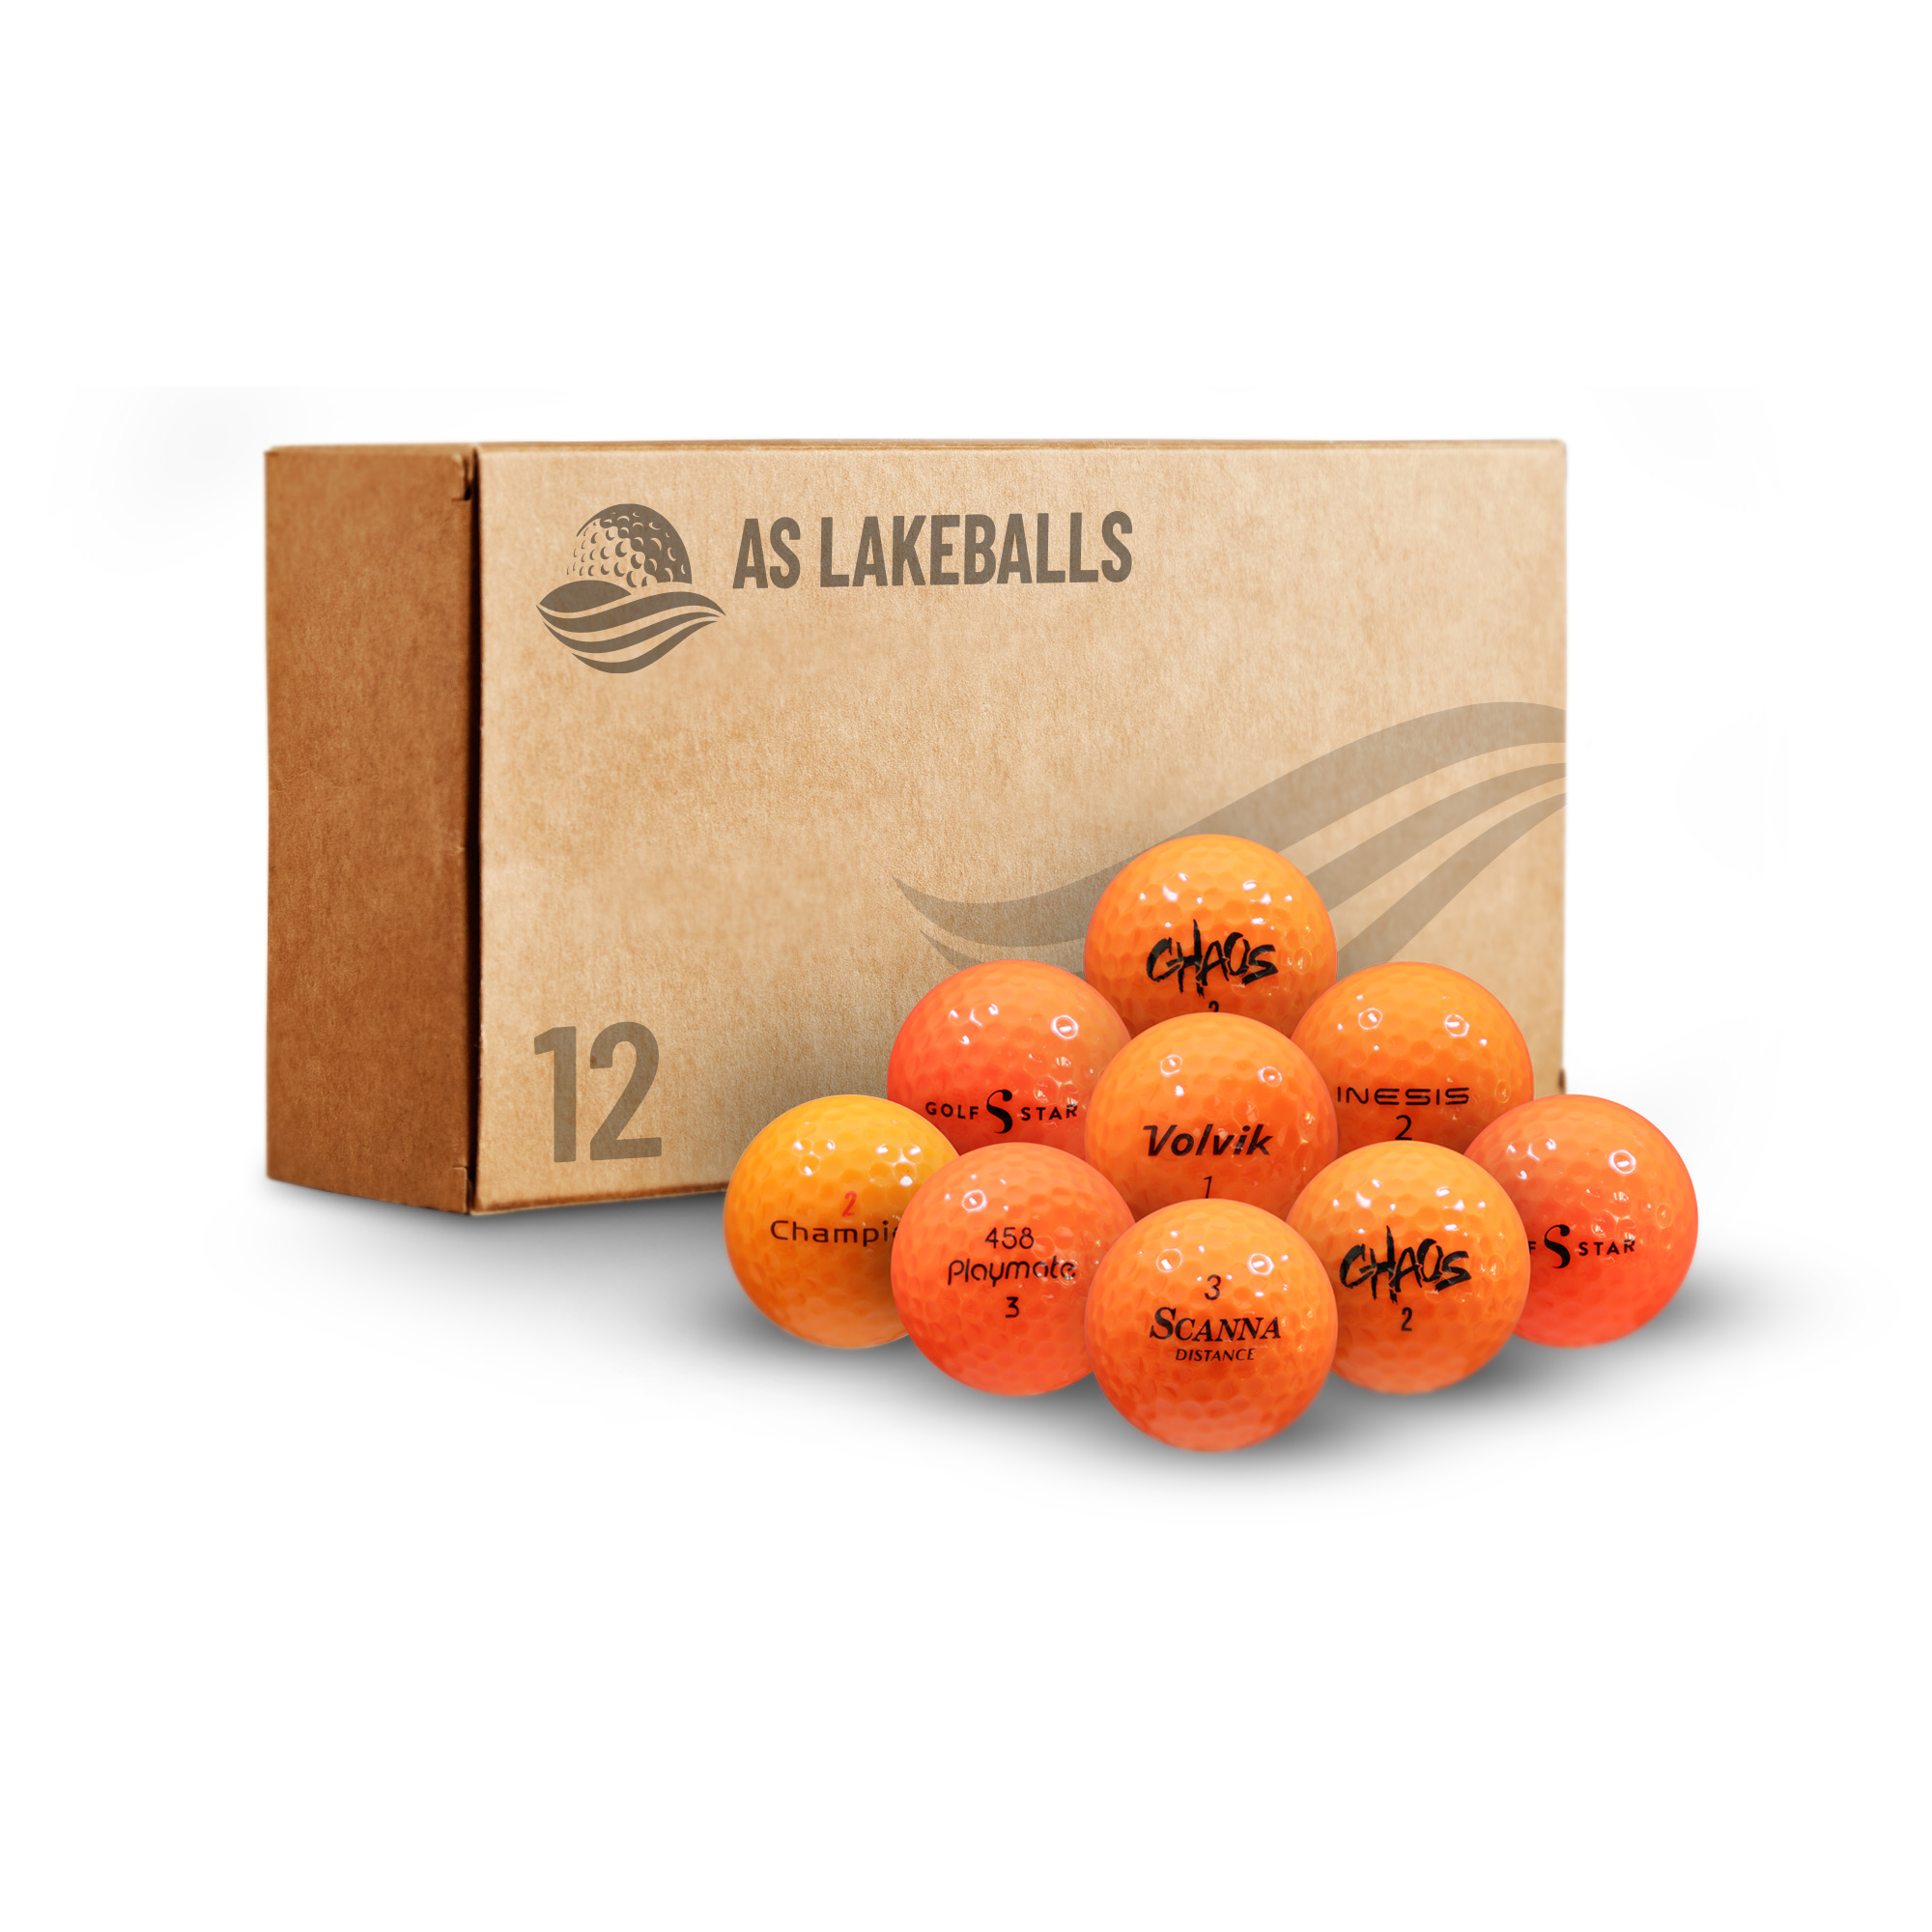 12 Stück Mixbälle leuchtrot/orange AA-AAA Lakeballs bei AS Lakeballs günstig kaufen